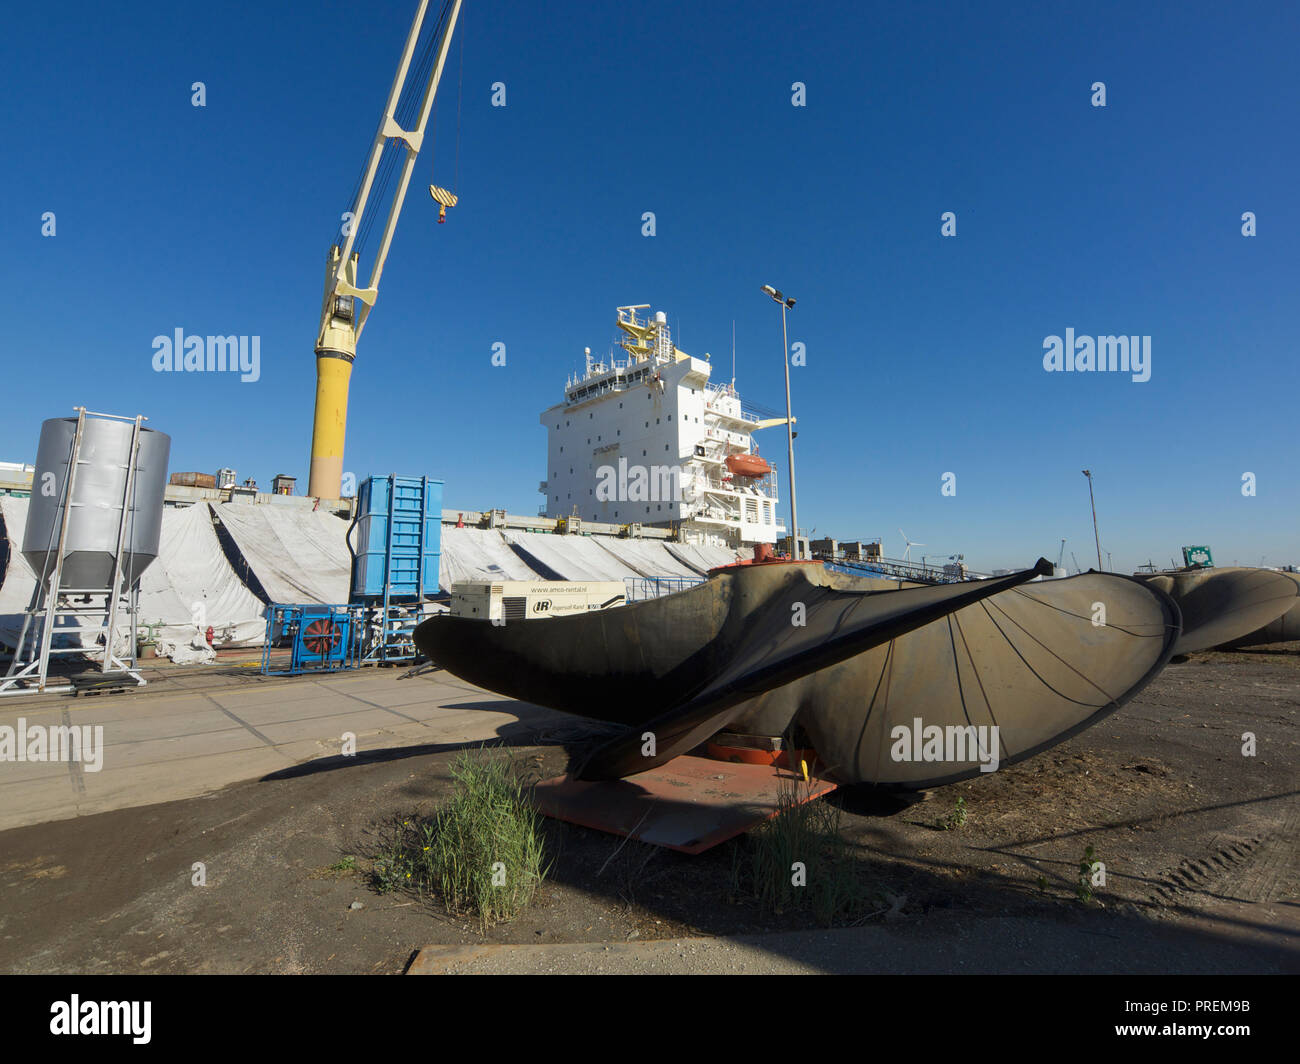 Nave da carico in bacino di carenaggio per la manutenzione con elica di grandi dimensioni in primo piano, il porto di Anversa, Belgio Foto Stock